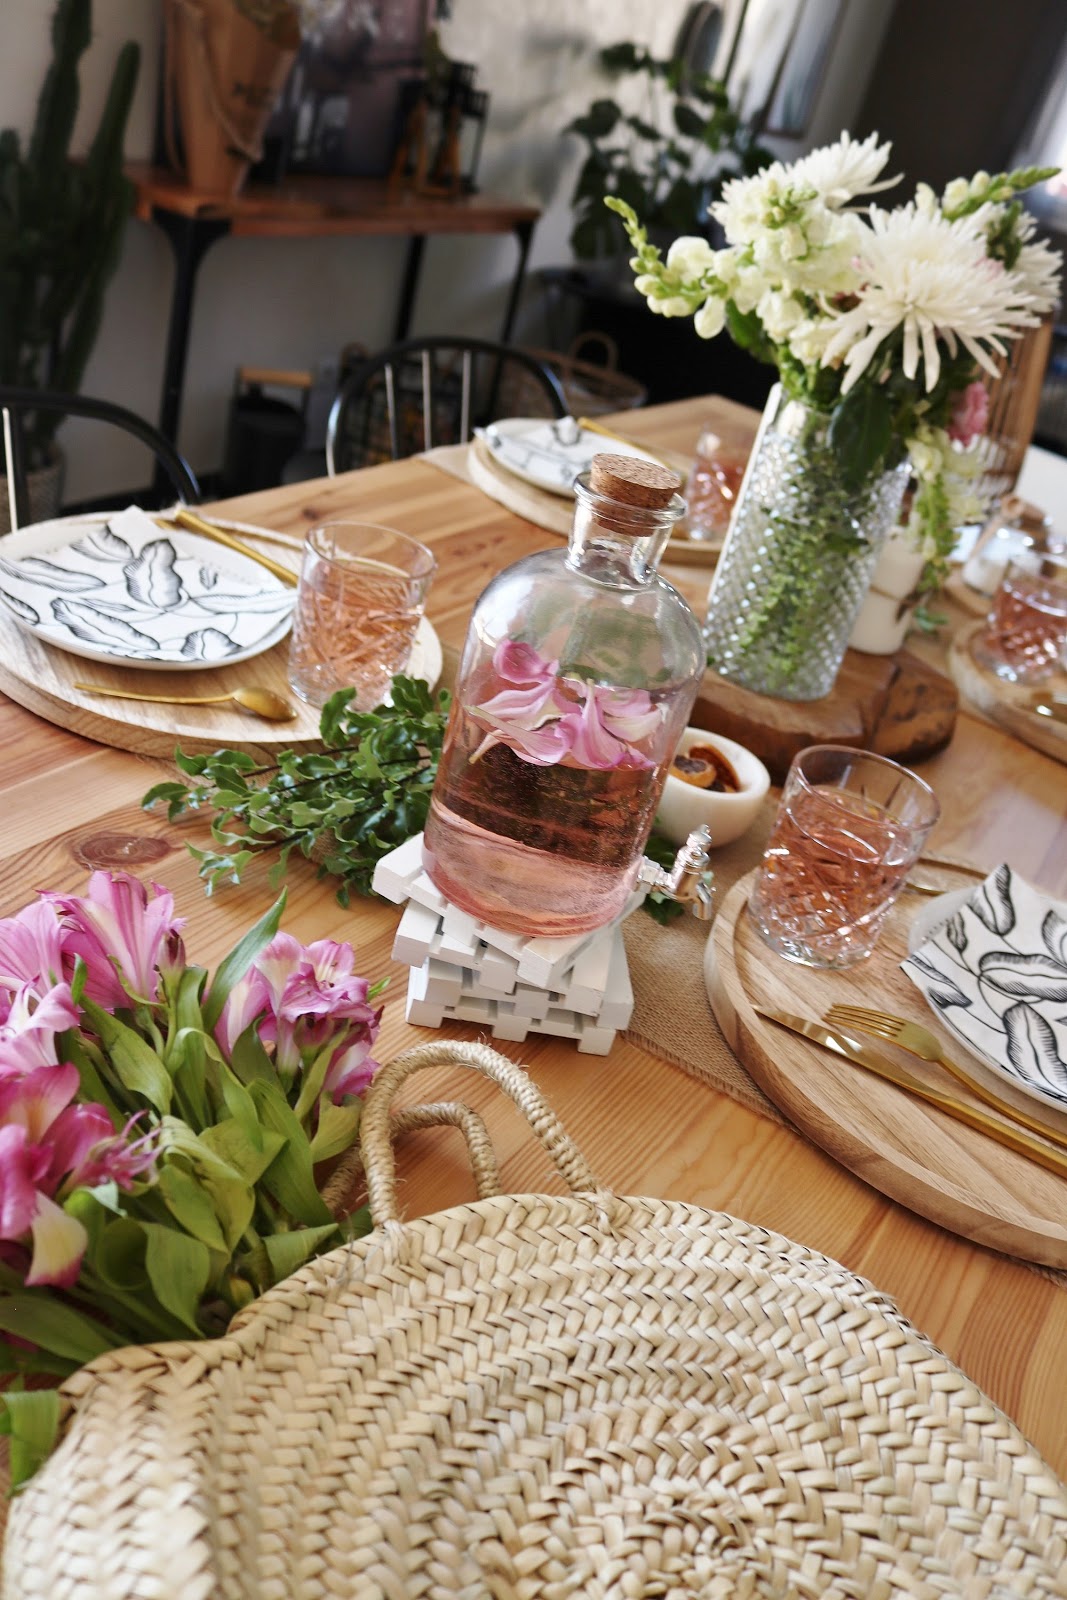 Cette table d'été arbore des couleurs douces et pastel, avec des fleurs et des matières naturelles